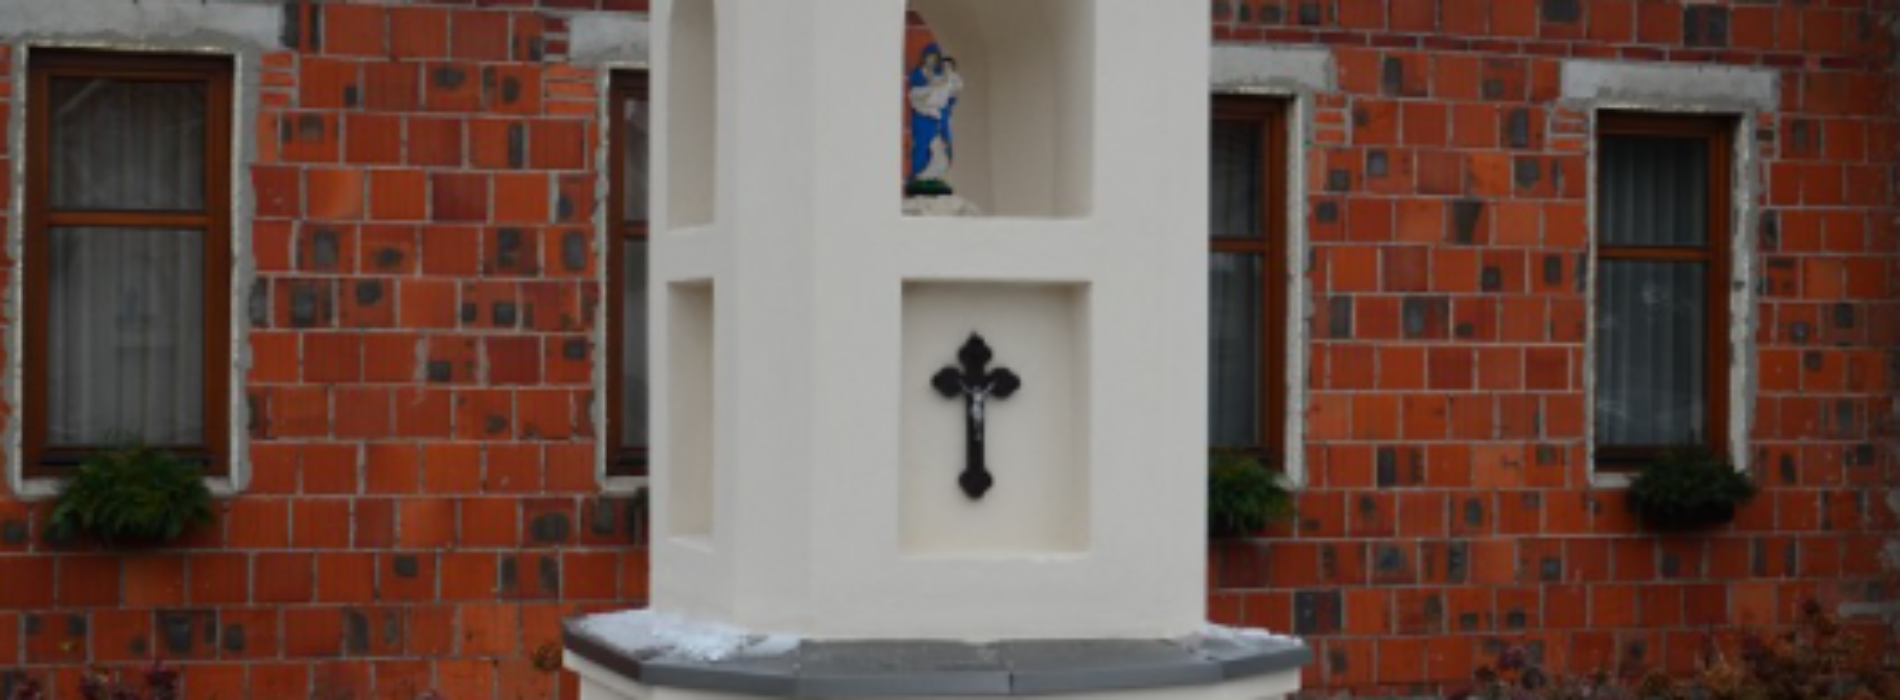 Najstarsza zabytkowa kapliczka przydrożna w Kaliszu na nowym miejscu i po konserwacji